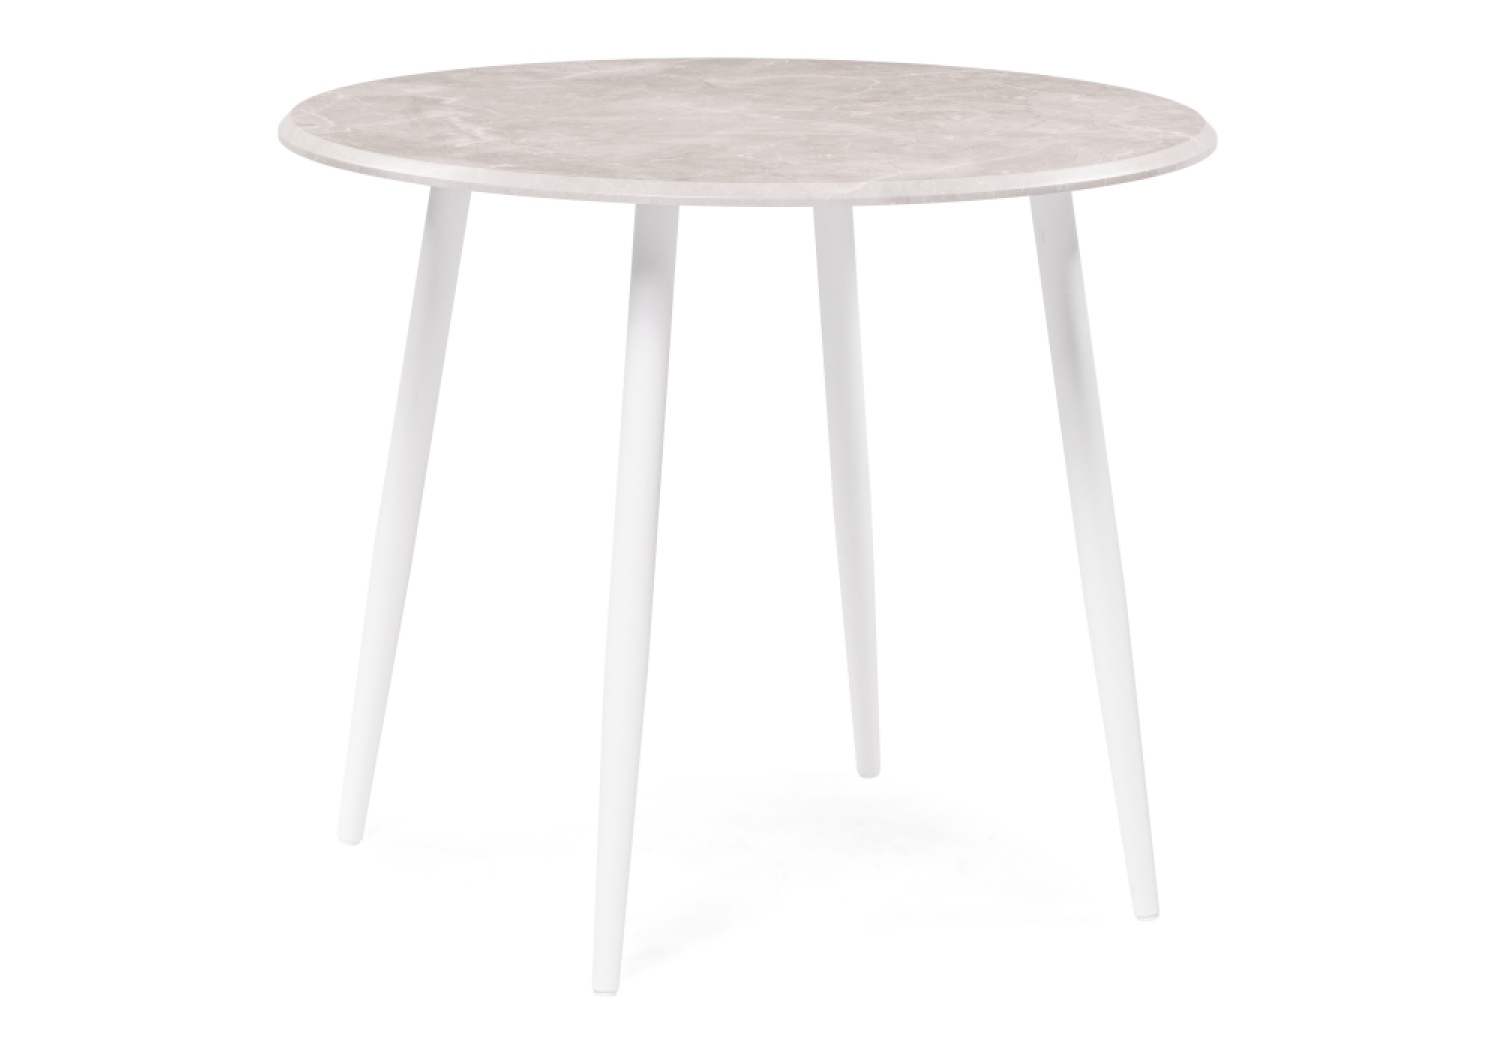 Деревянный стол Абилин 90 мрамор светло-серый / белый матовый